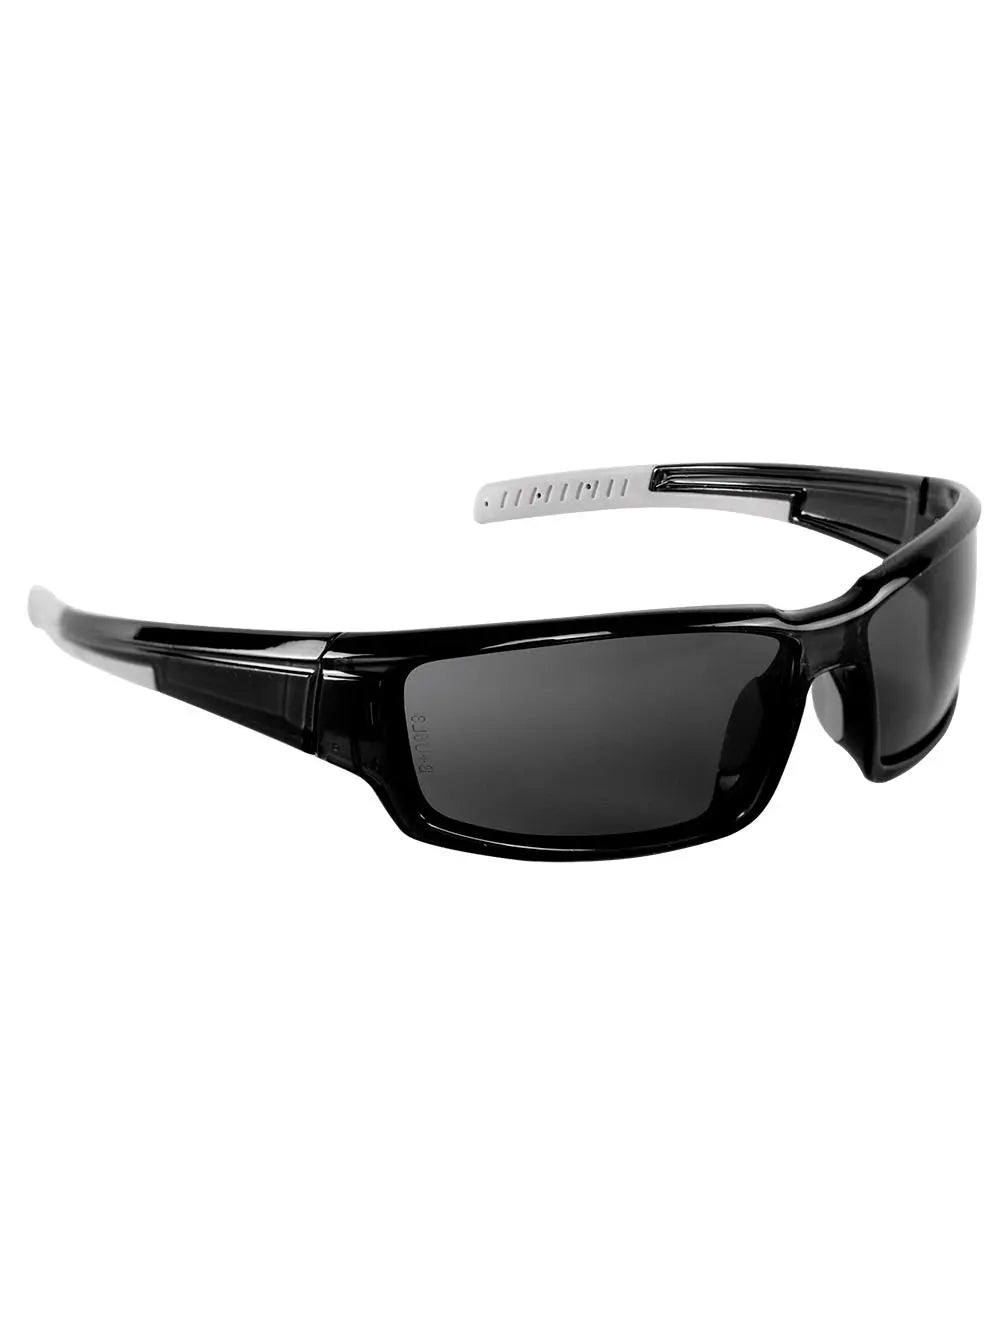 BULLHEAD SAFETY - Maki Anti Fog Safety Glasses, Smoke/Crystal Black